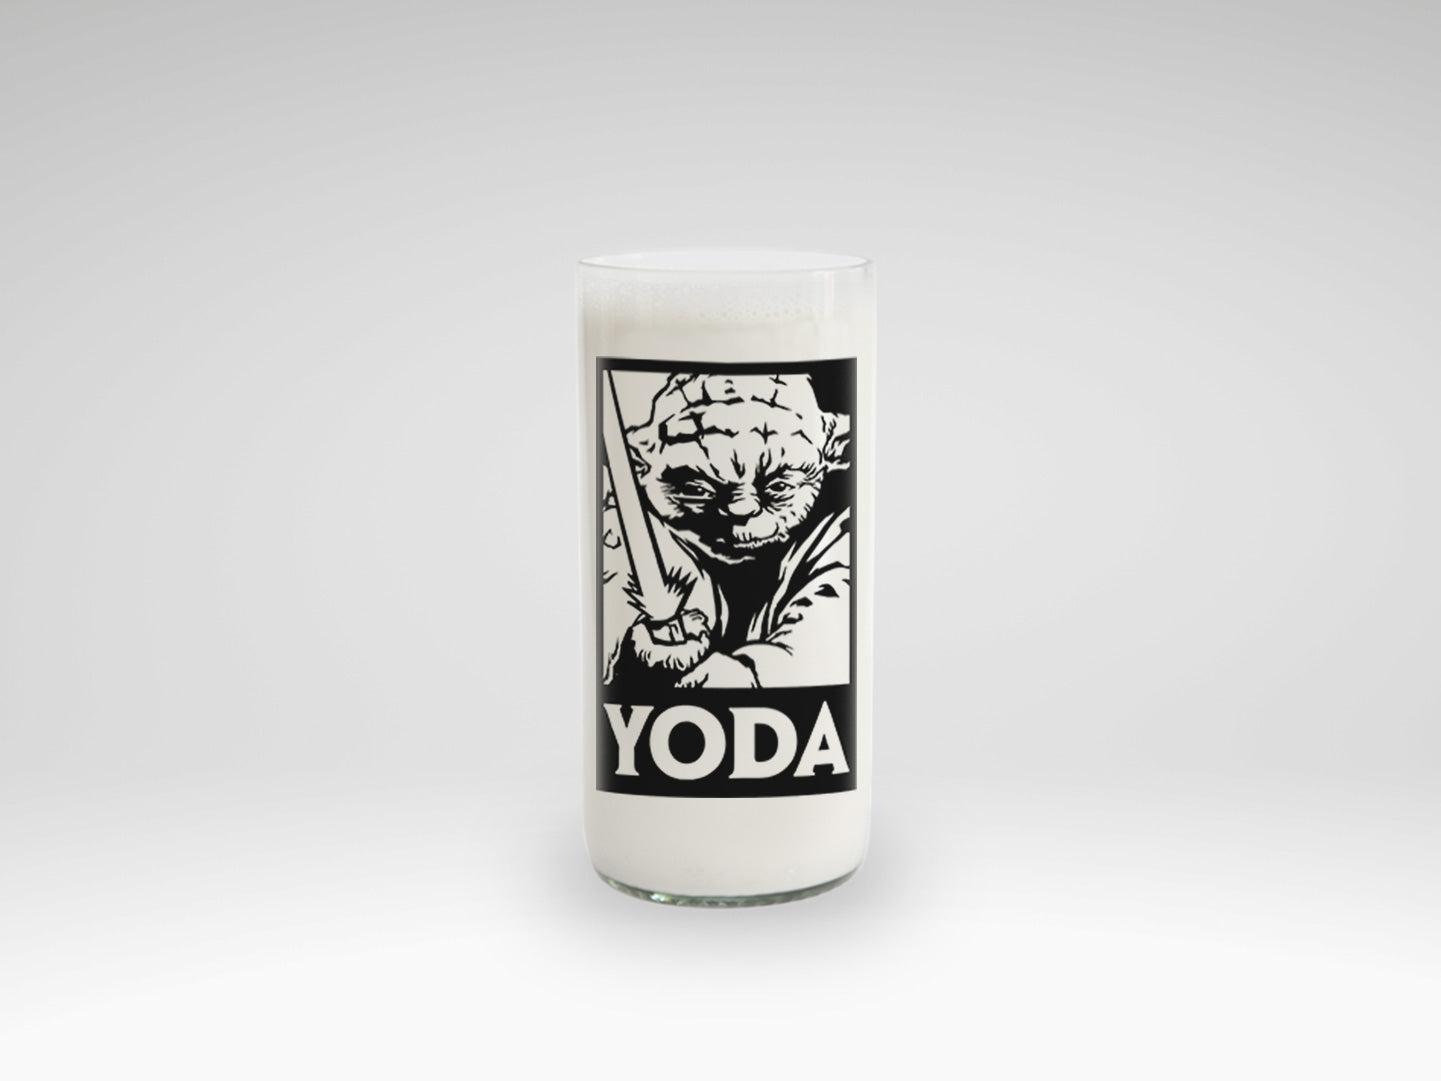 Vaso del maestro Yoda de Star Wars New Hope color transparente 500ml